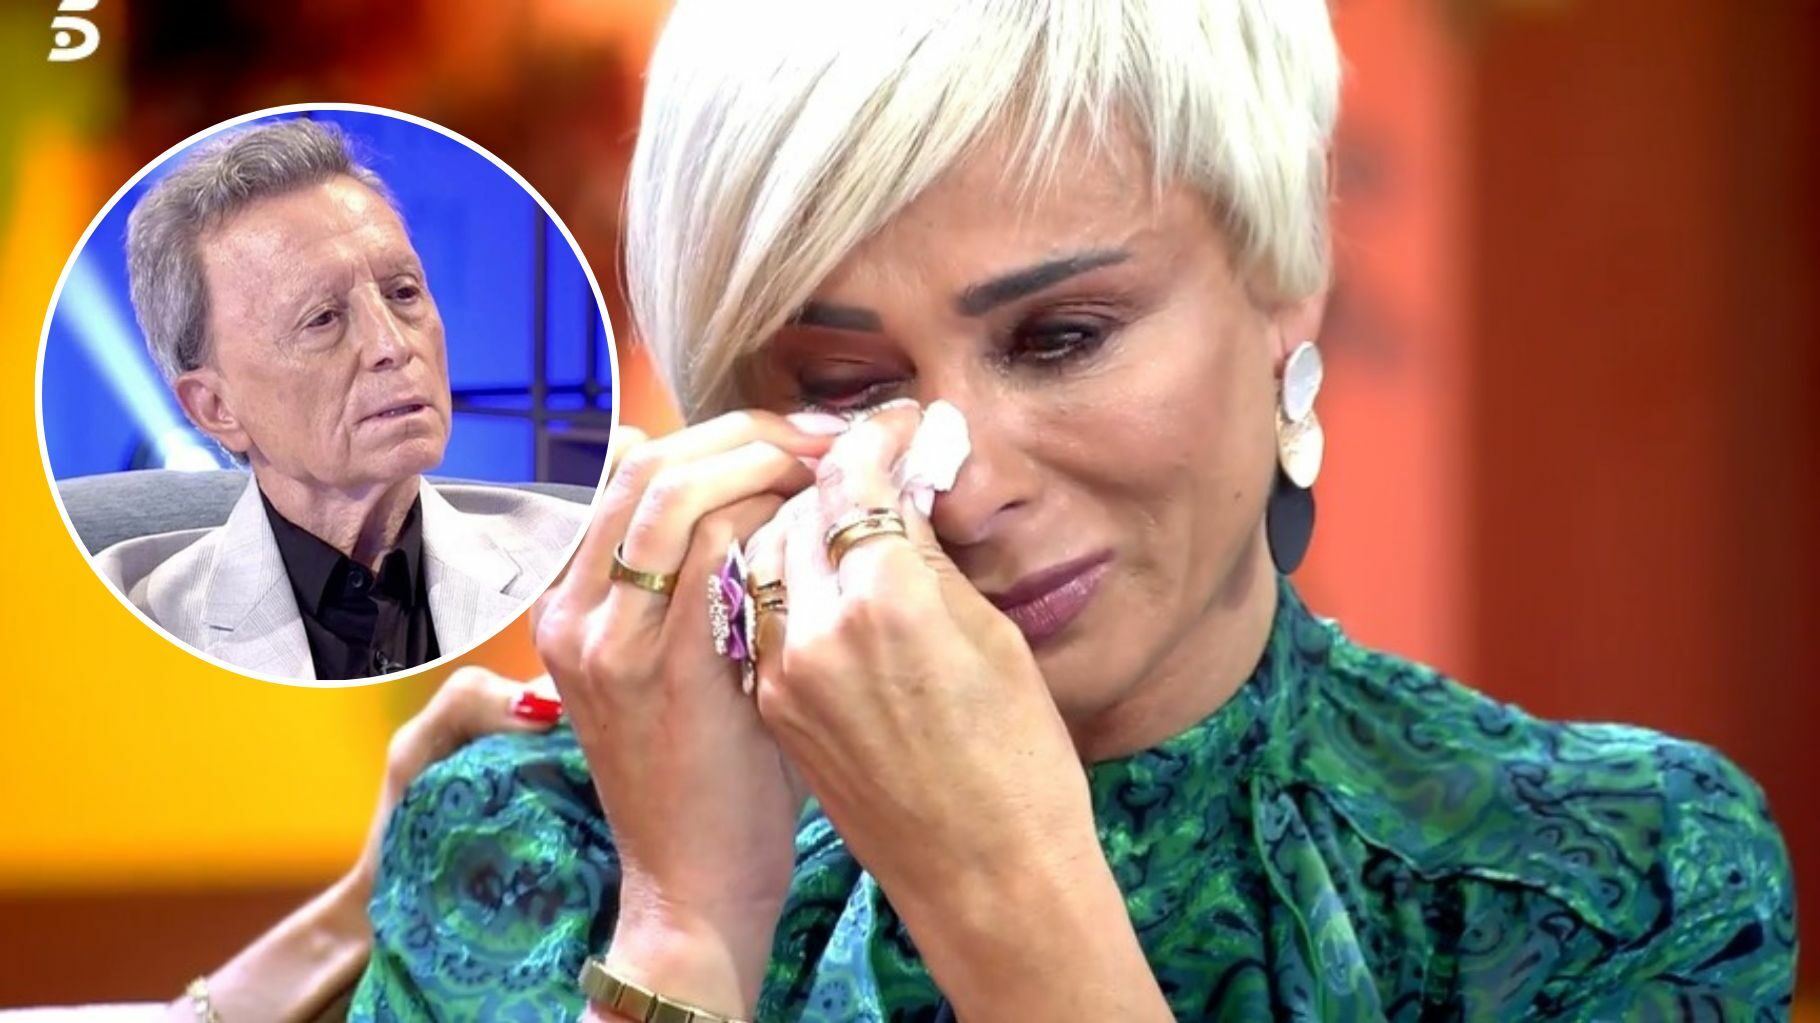 Ana María Aldón rompe a llorar al recibir un mensaje de Ortega Cano tras confirmar su divorcio